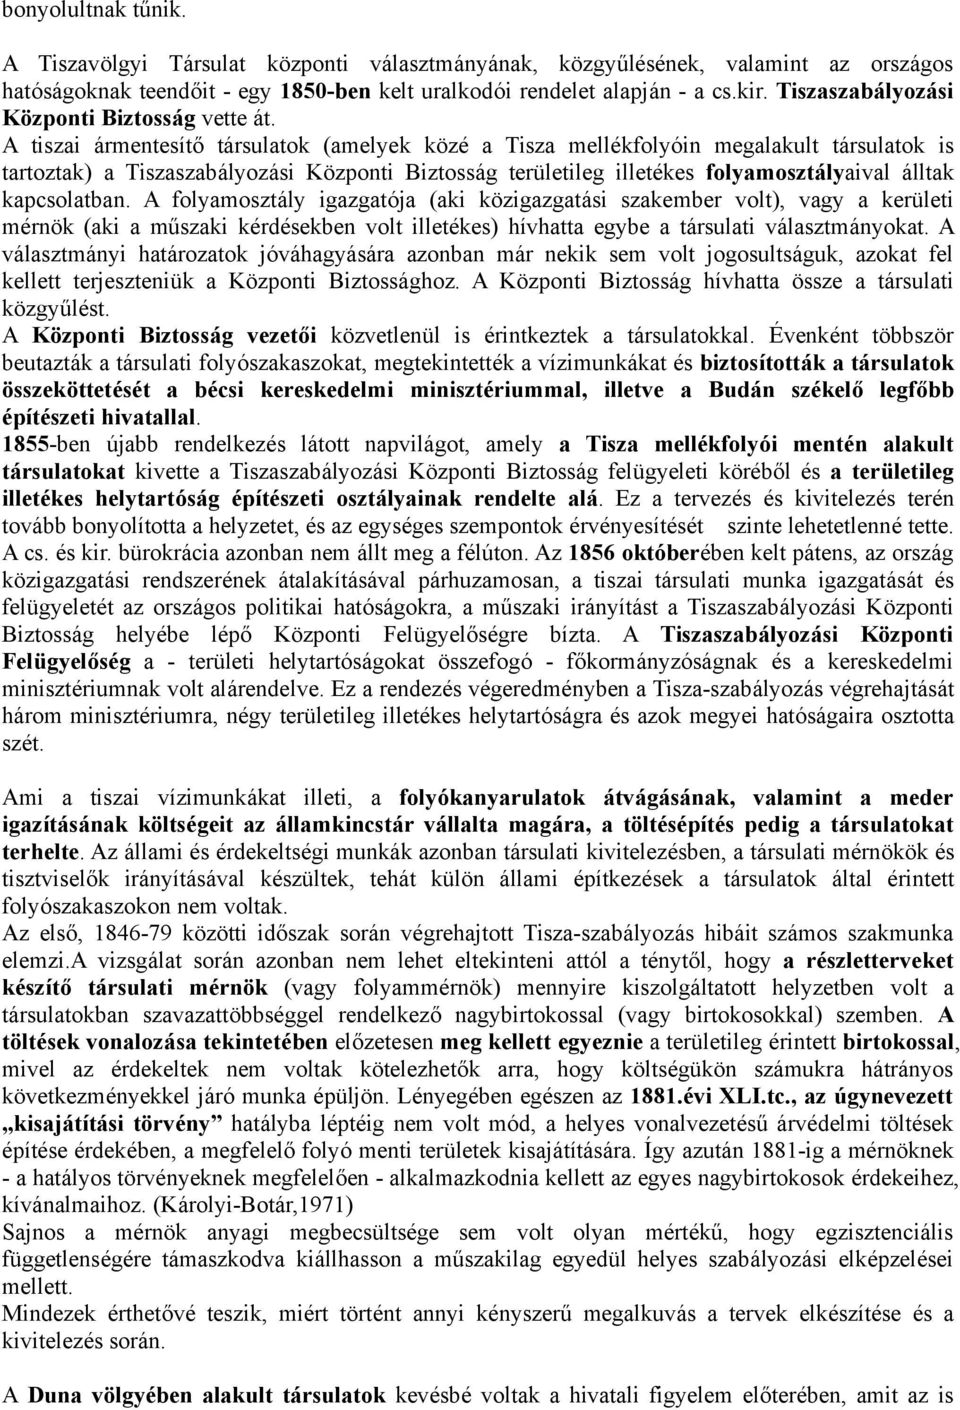 A tiszai ármentesítő társulatok (amelyek közé a Tisza mellékfolyóin megalakult társulatok is tartoztak) a Tiszaszabályozási Központi Biztosság területileg illetékes folyamosztályaival álltak